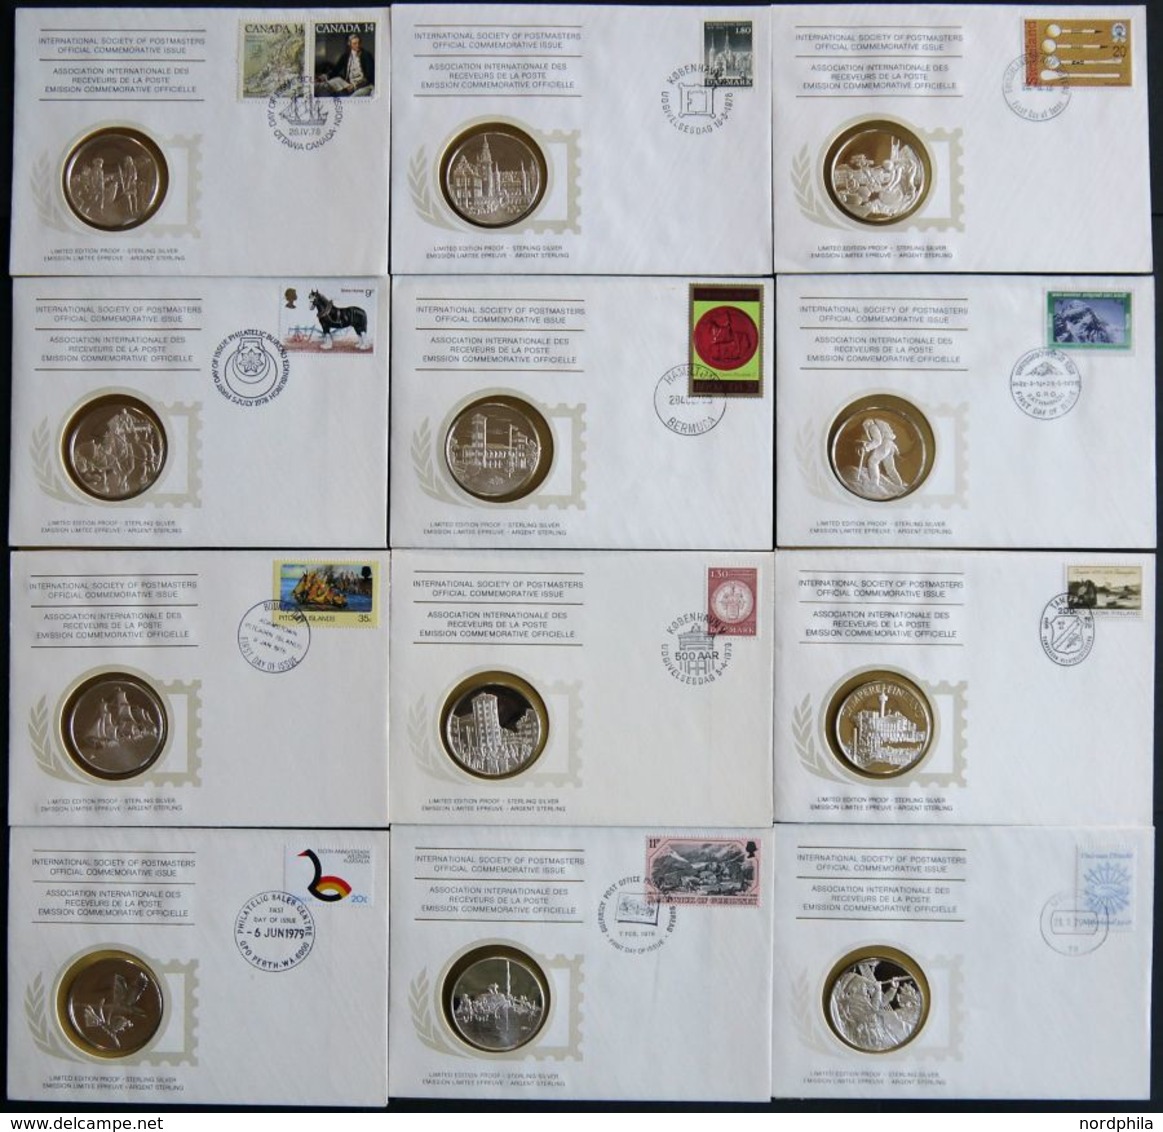 SONSTIGE MOTIVE 1978-80, 36 Verschiedene Ersttagsbriefe Der International Society Of Postmasters Mit Je Einer Medaille A - Unclassified